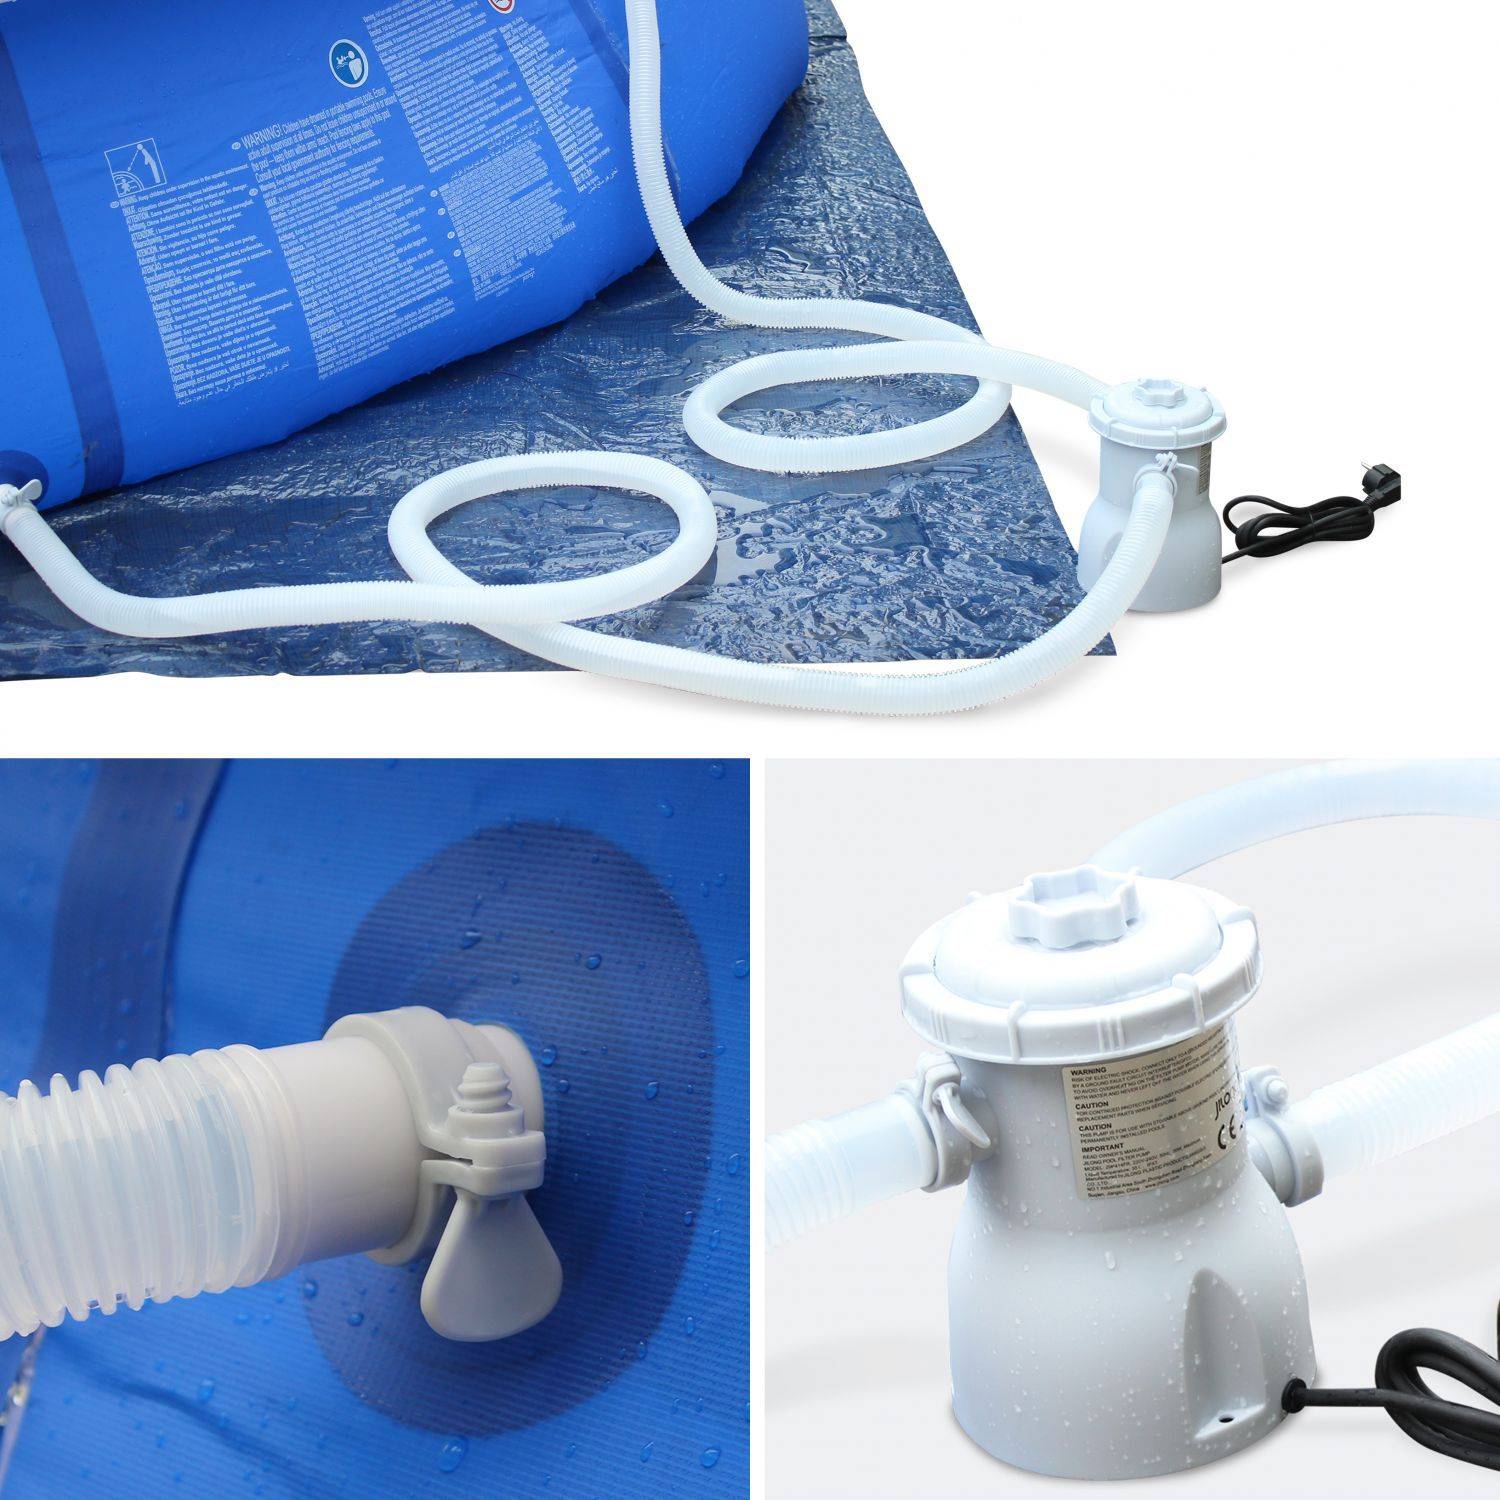 Kit piscine Cristal gonflable bleue autoportante ronde Ø420x84cm avec pompe de filtration, bâche de protection, tapis de sol et échelle Photo6